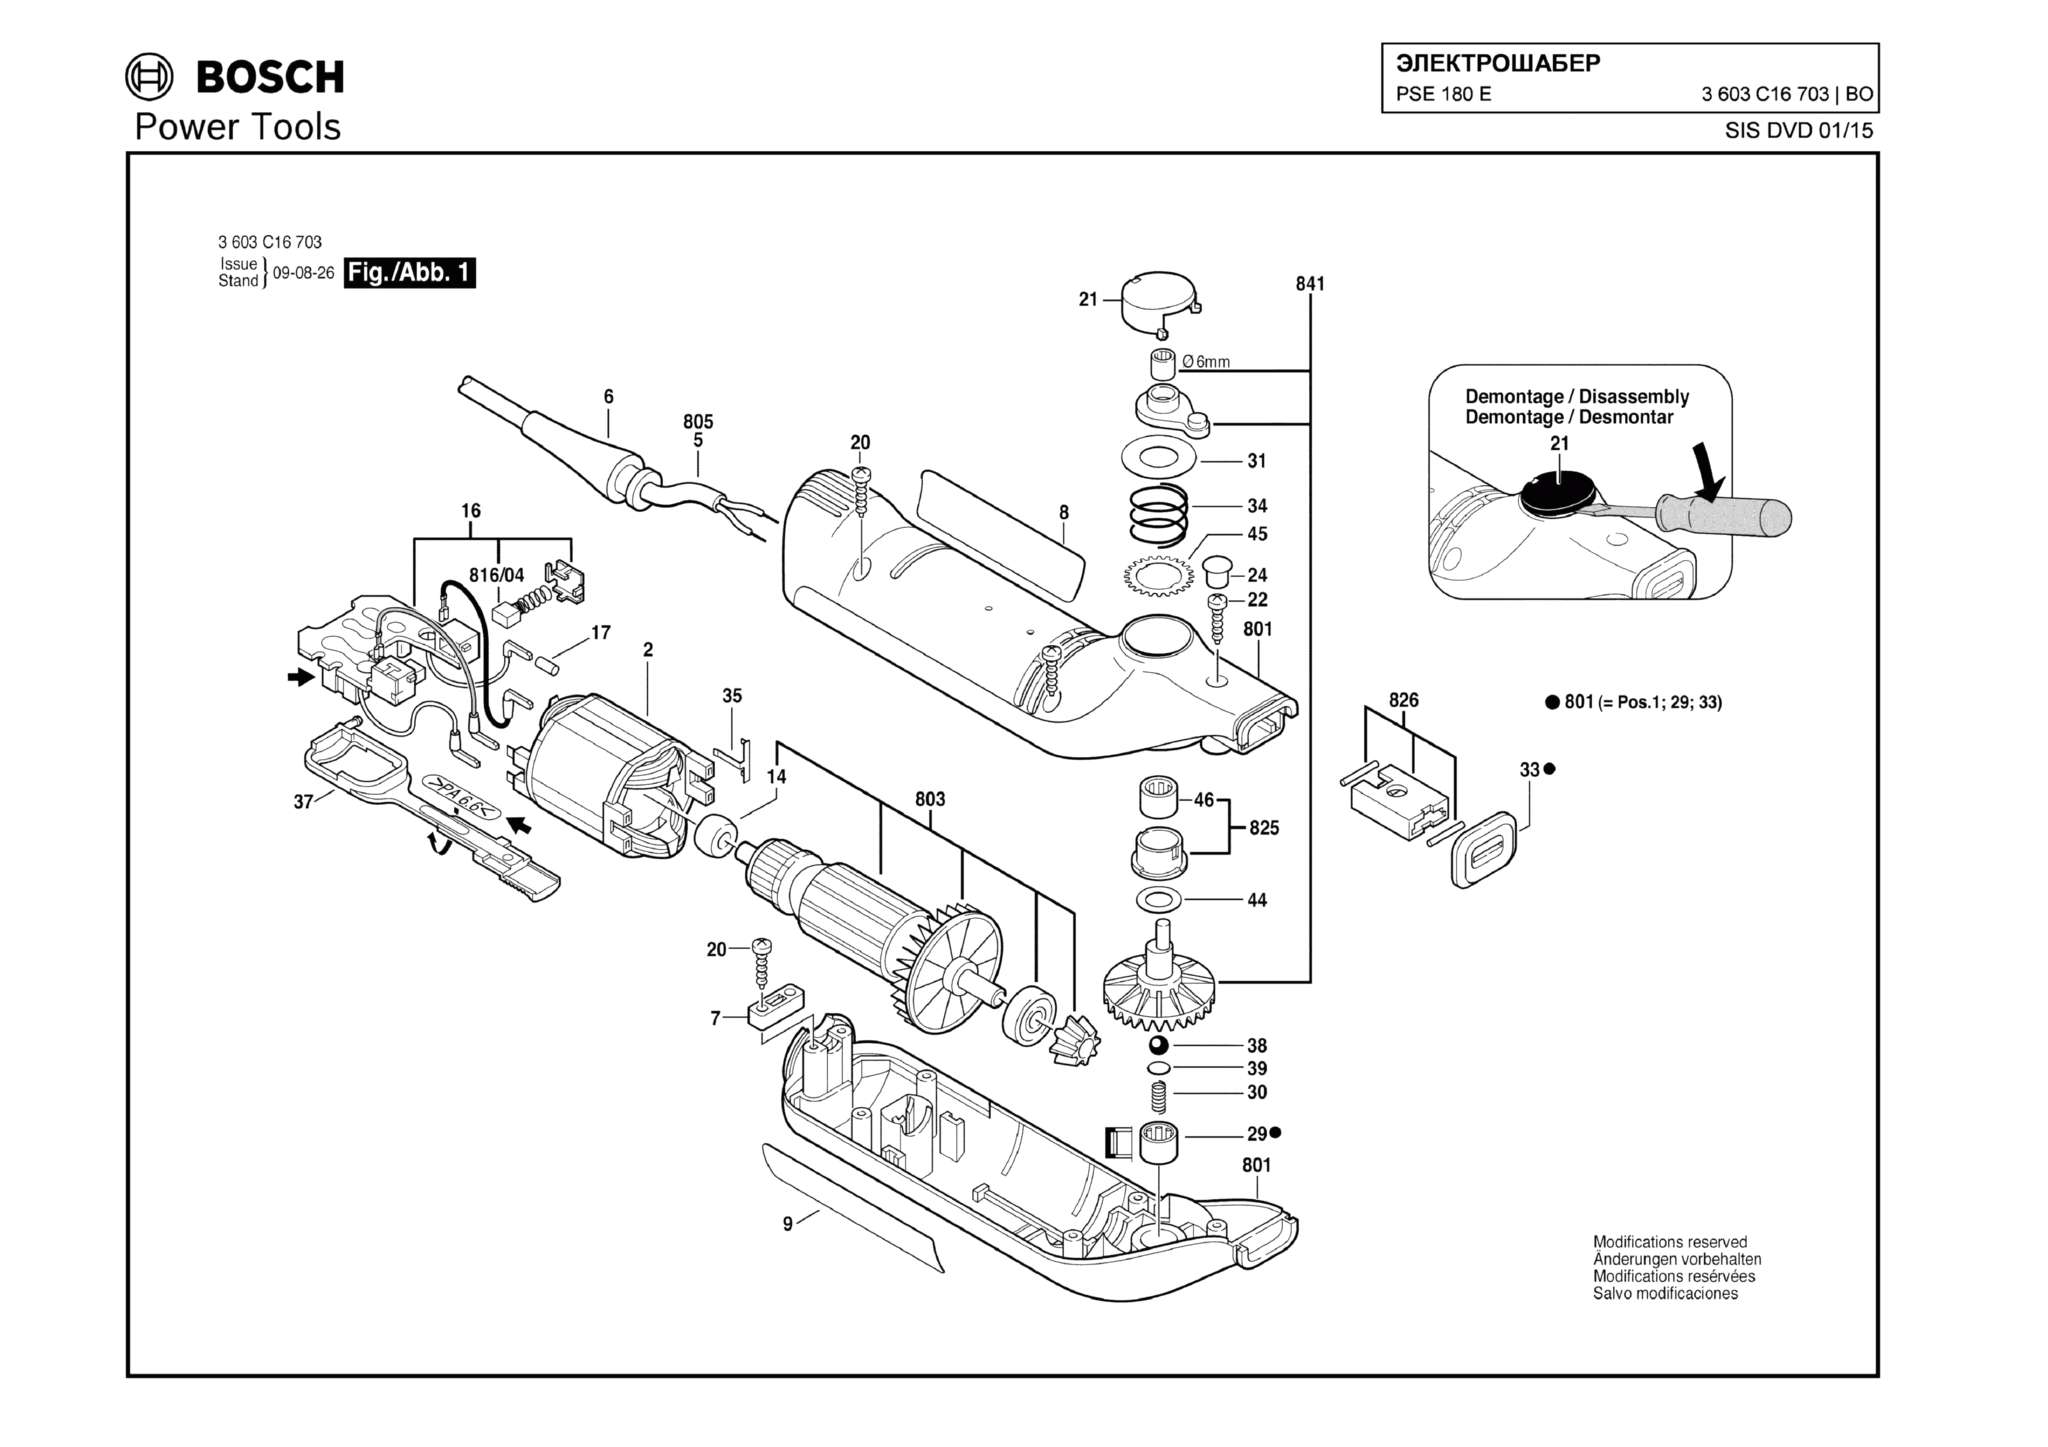 Запчасти, схема и деталировка Bosch PSE 180 E (ТИП 3603C16703)